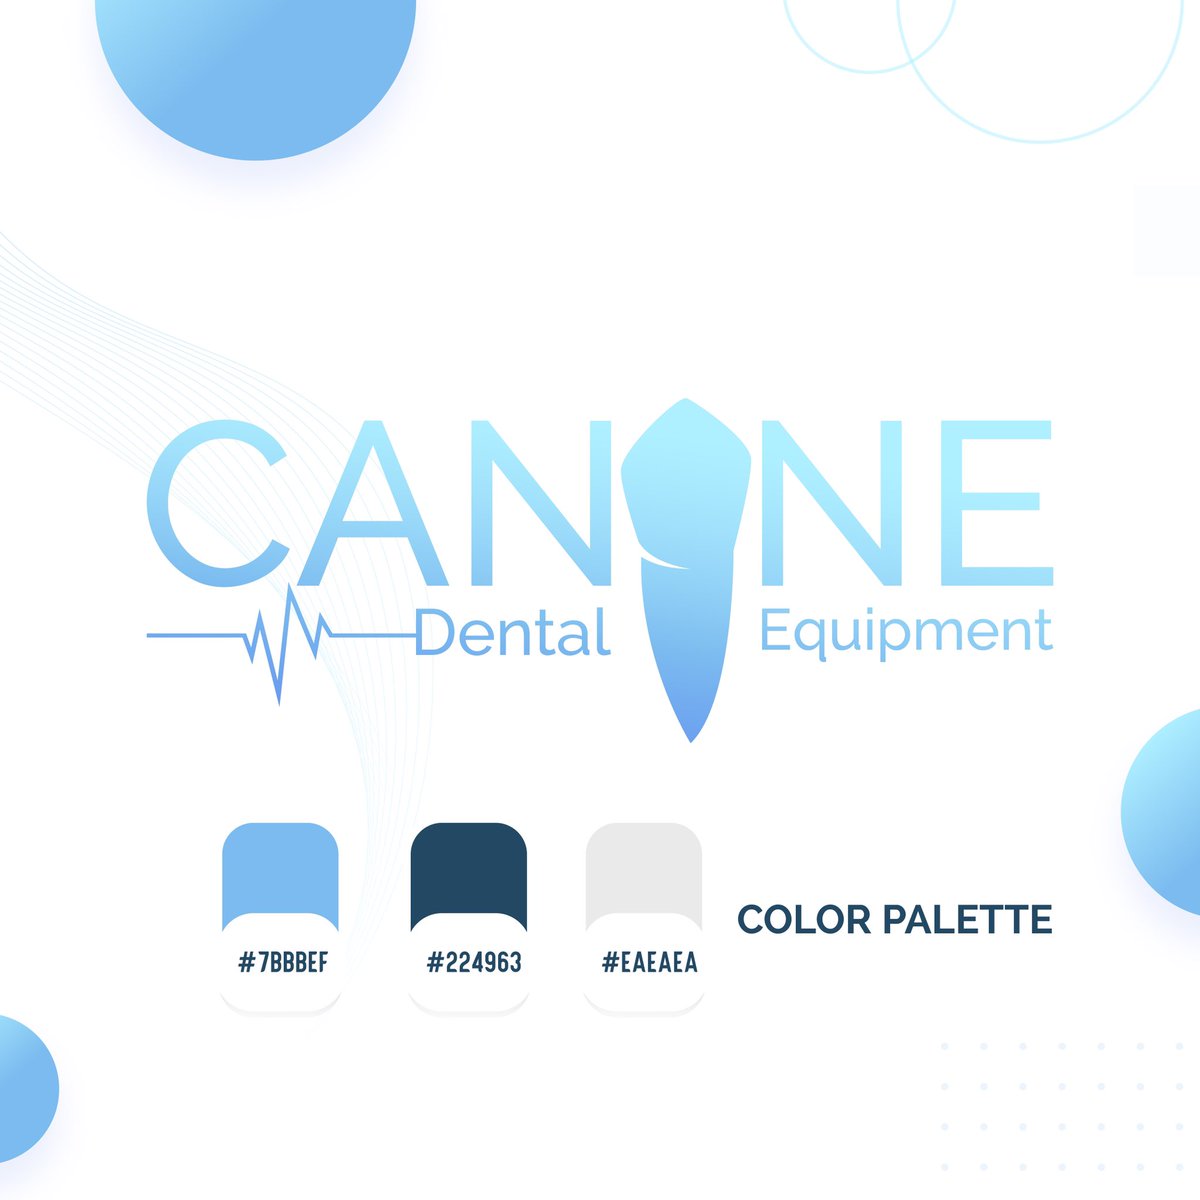 My new work 
Canine for dental equipment🦷
…………
#illustrator #adobeillustrator #branding #brandingdesign #logo #dentist #dentistry